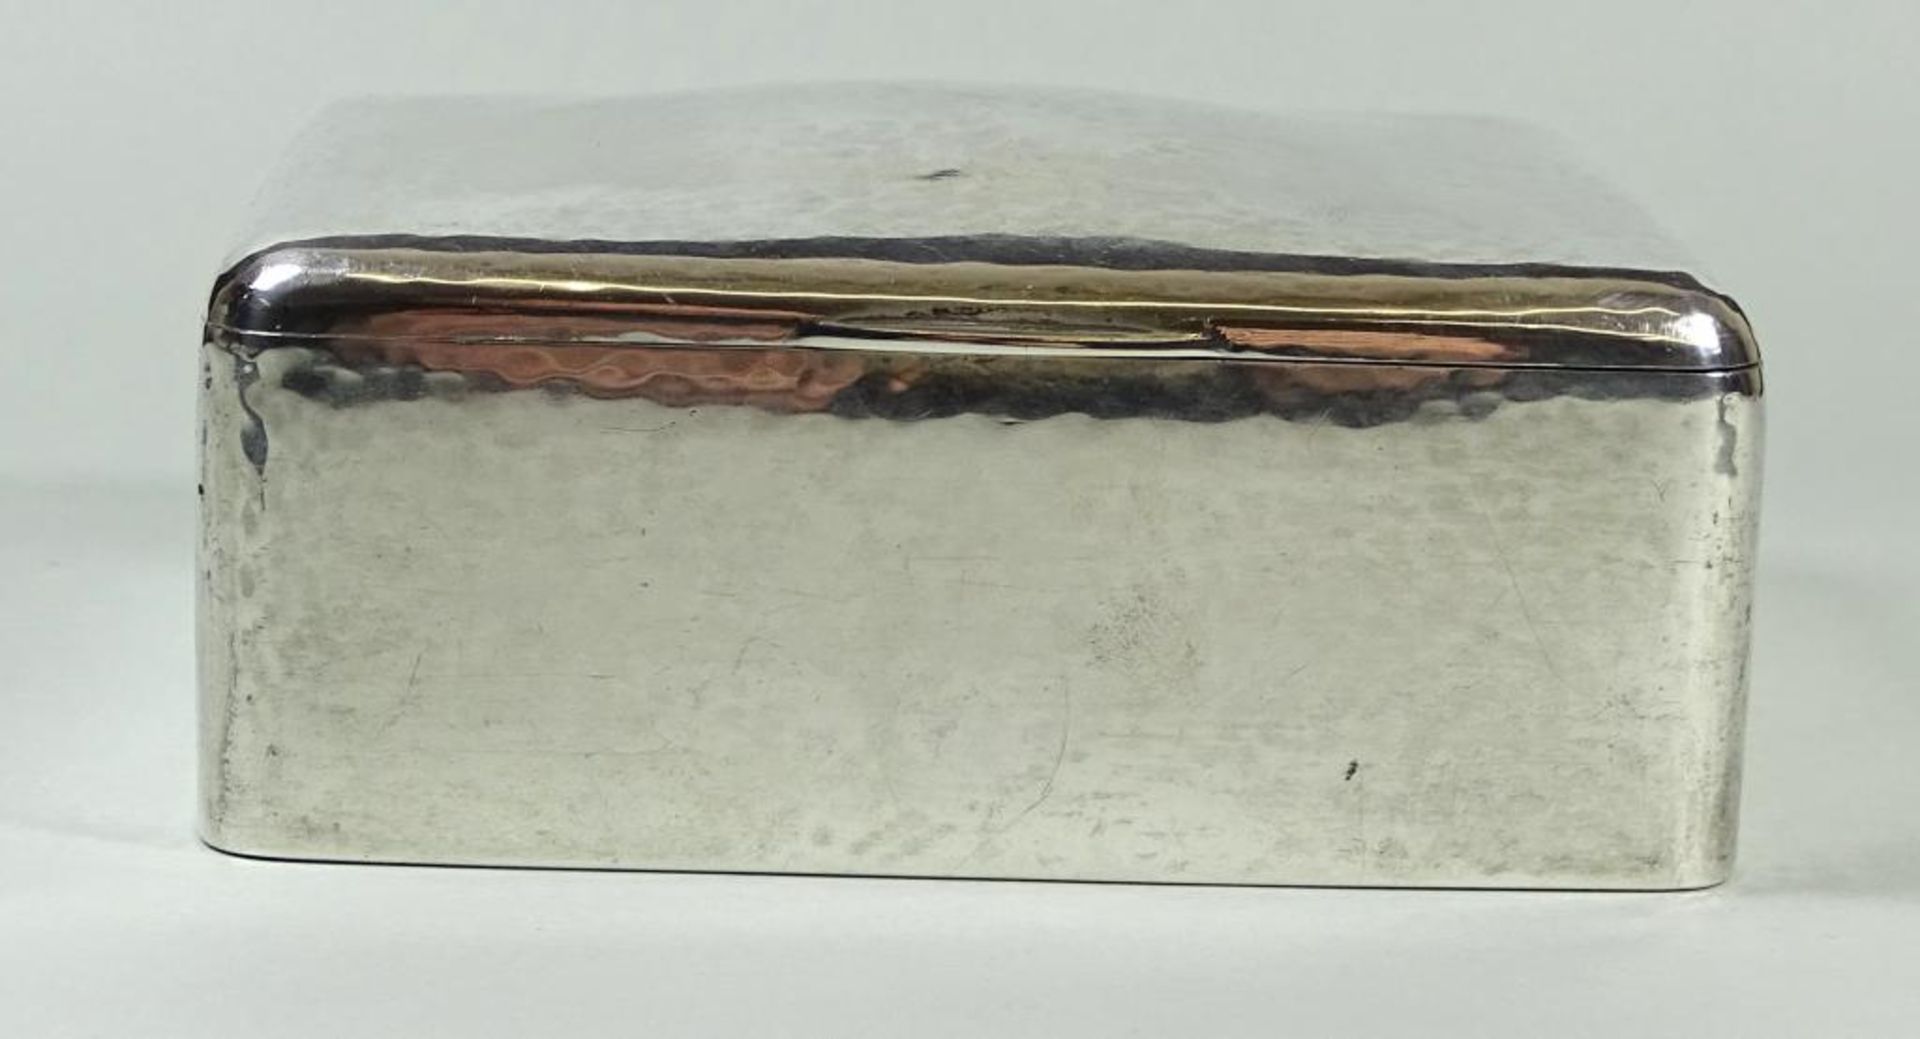 Zigaretten Dose von Evald Nielsen Dänemark,1927,330gr.,Hammerschlagdekor,H-4,5cm,11,5x9,2cm,1x Delle - Bild 2 aus 8